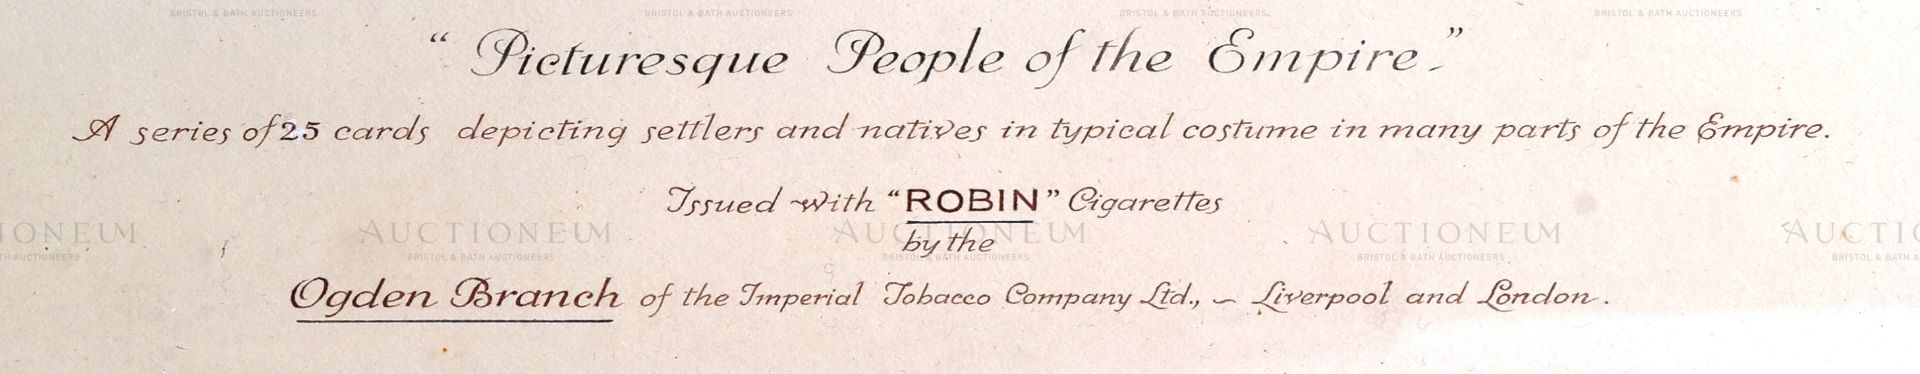 OGDEN'S ROBIN CIGARETTE CARDS - ORIGINAL ARTWORK (1927) - Image 5 of 6